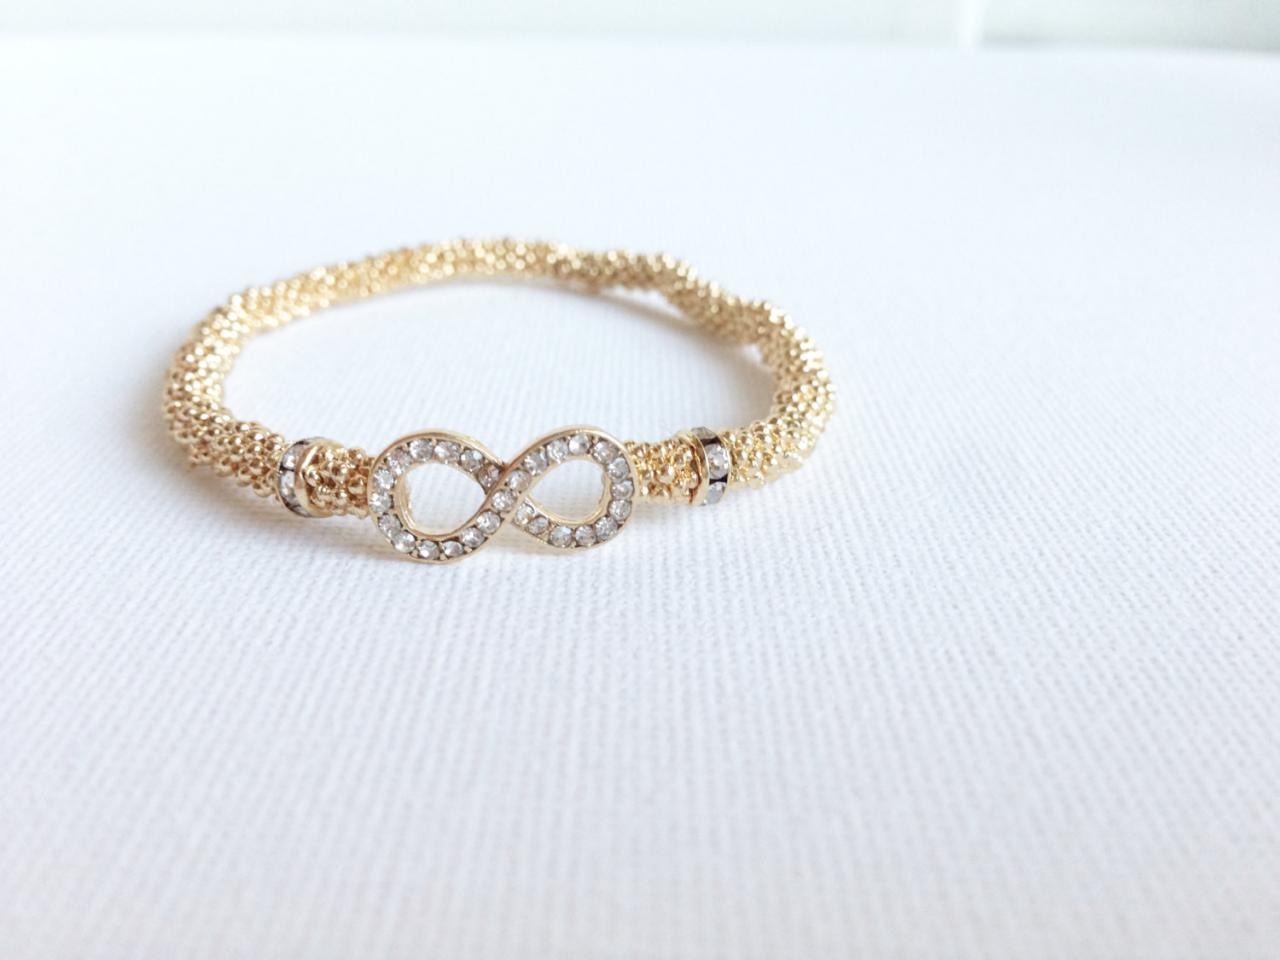 Gold Infinity Bracelet - Stretch Bracelet - Pave Gold Stretch Bracelet - Beaded Jewelry